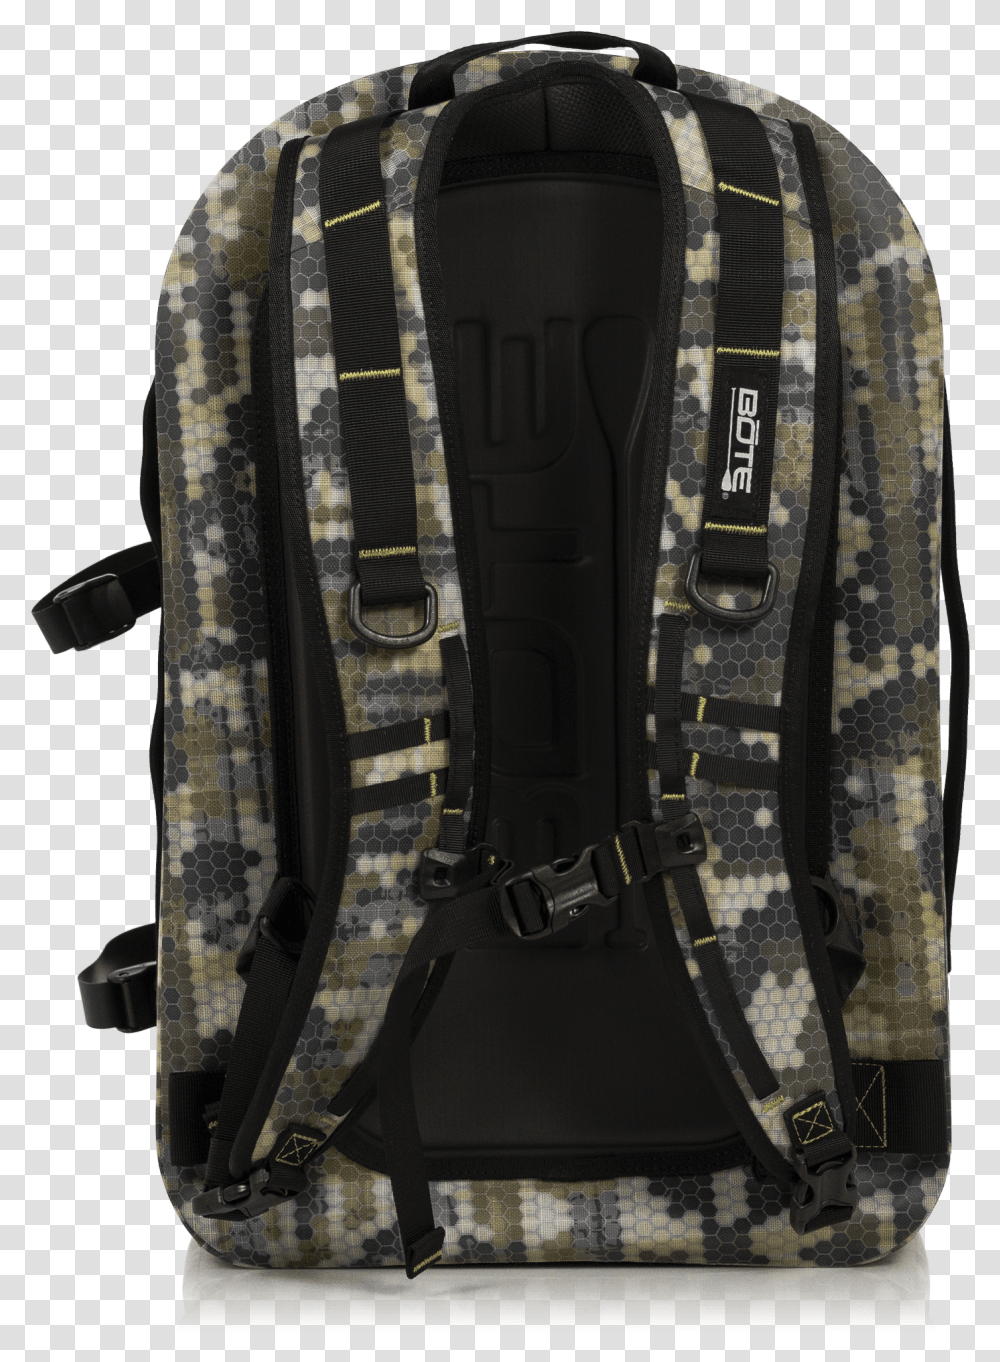 Bote Highwater Backpack Verge Camo Back Laptop Bag, Apparel, Vest, Harness Transparent Png